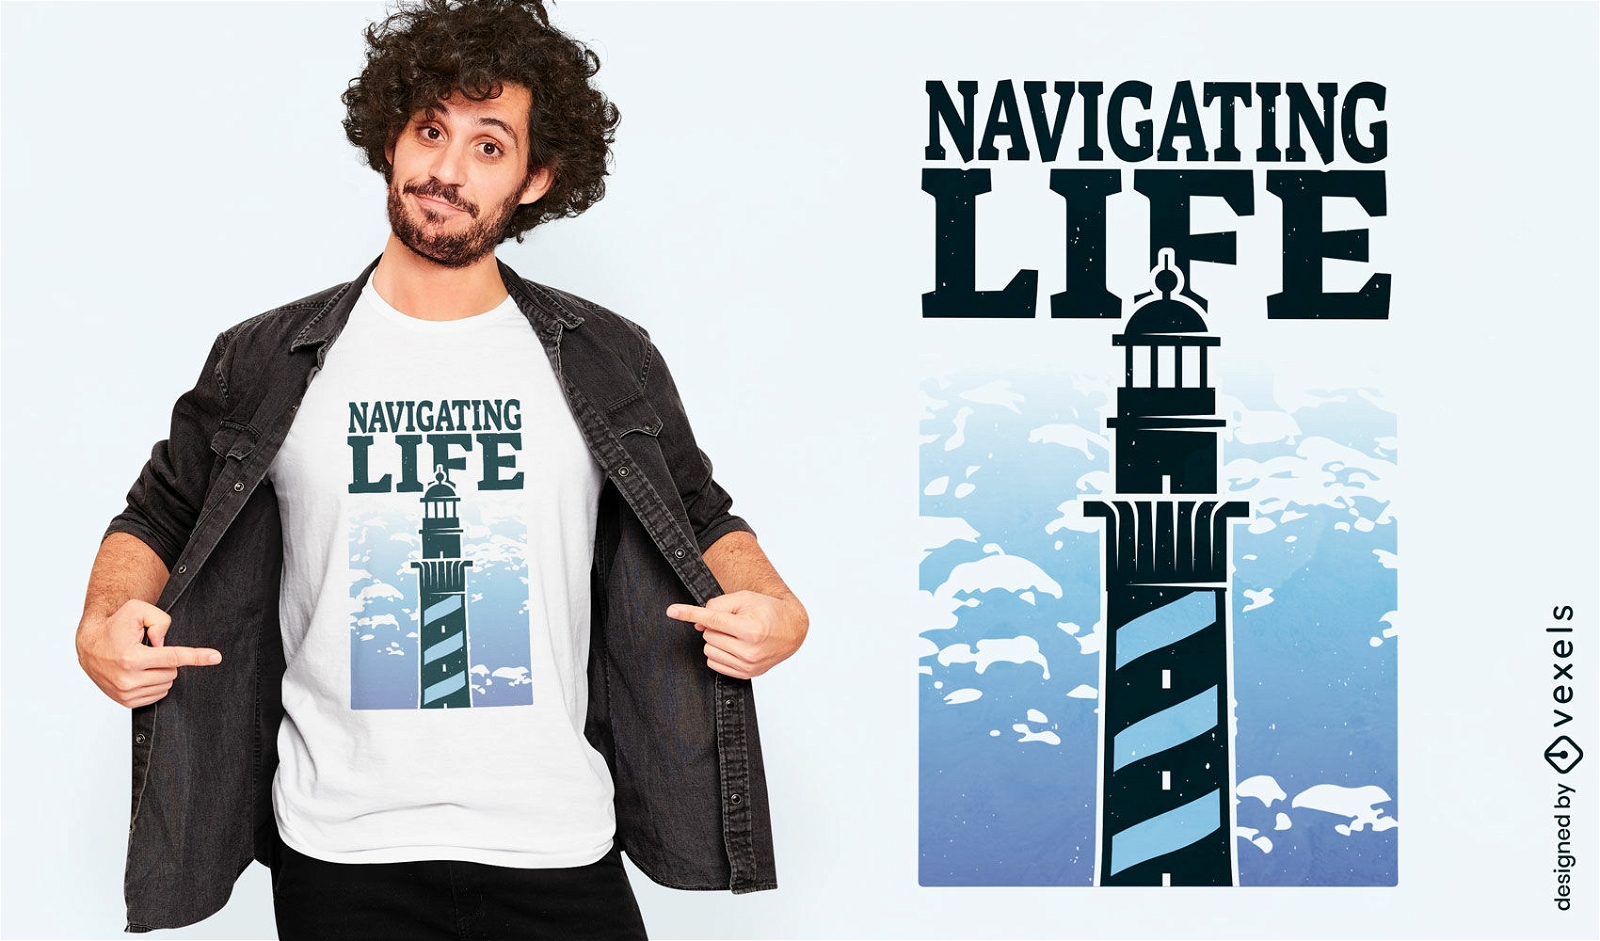 Navigating life t-shirt design